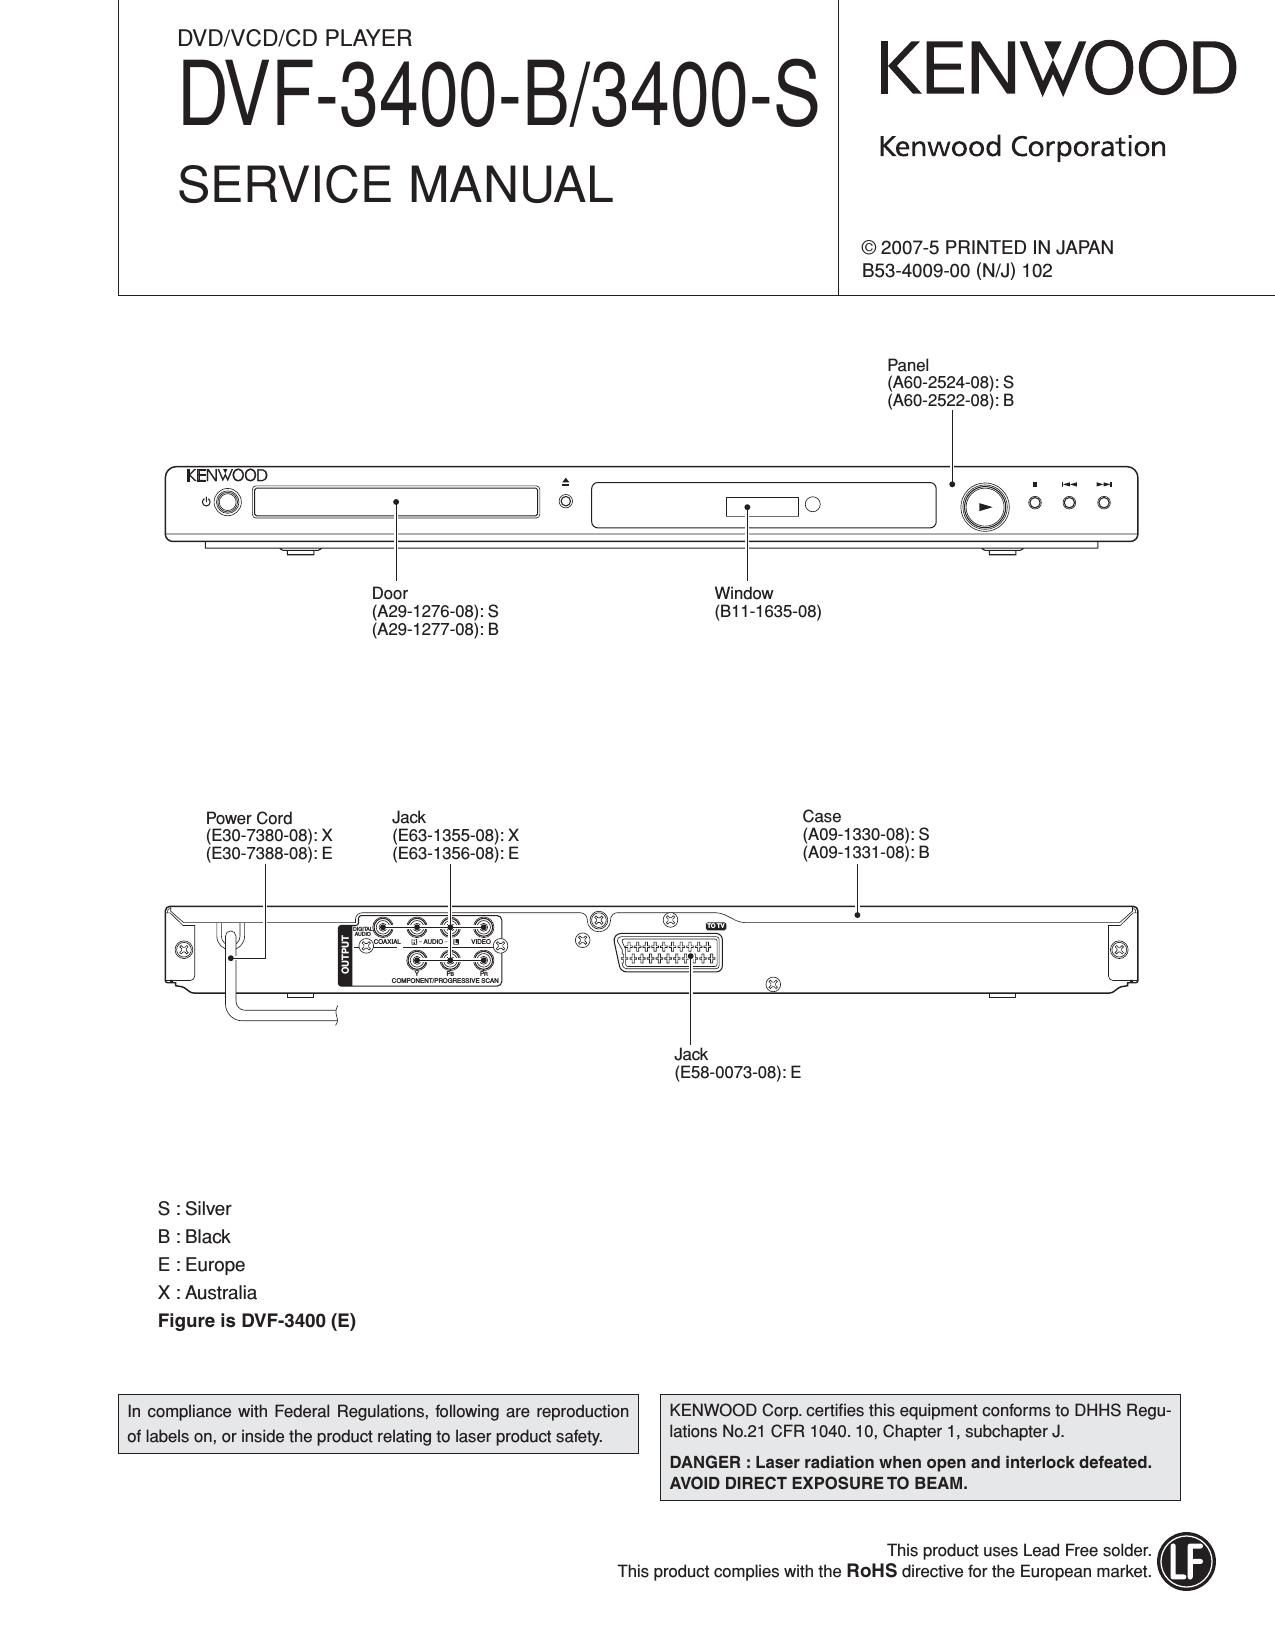 Kenwood DVF 3400 Service Manual